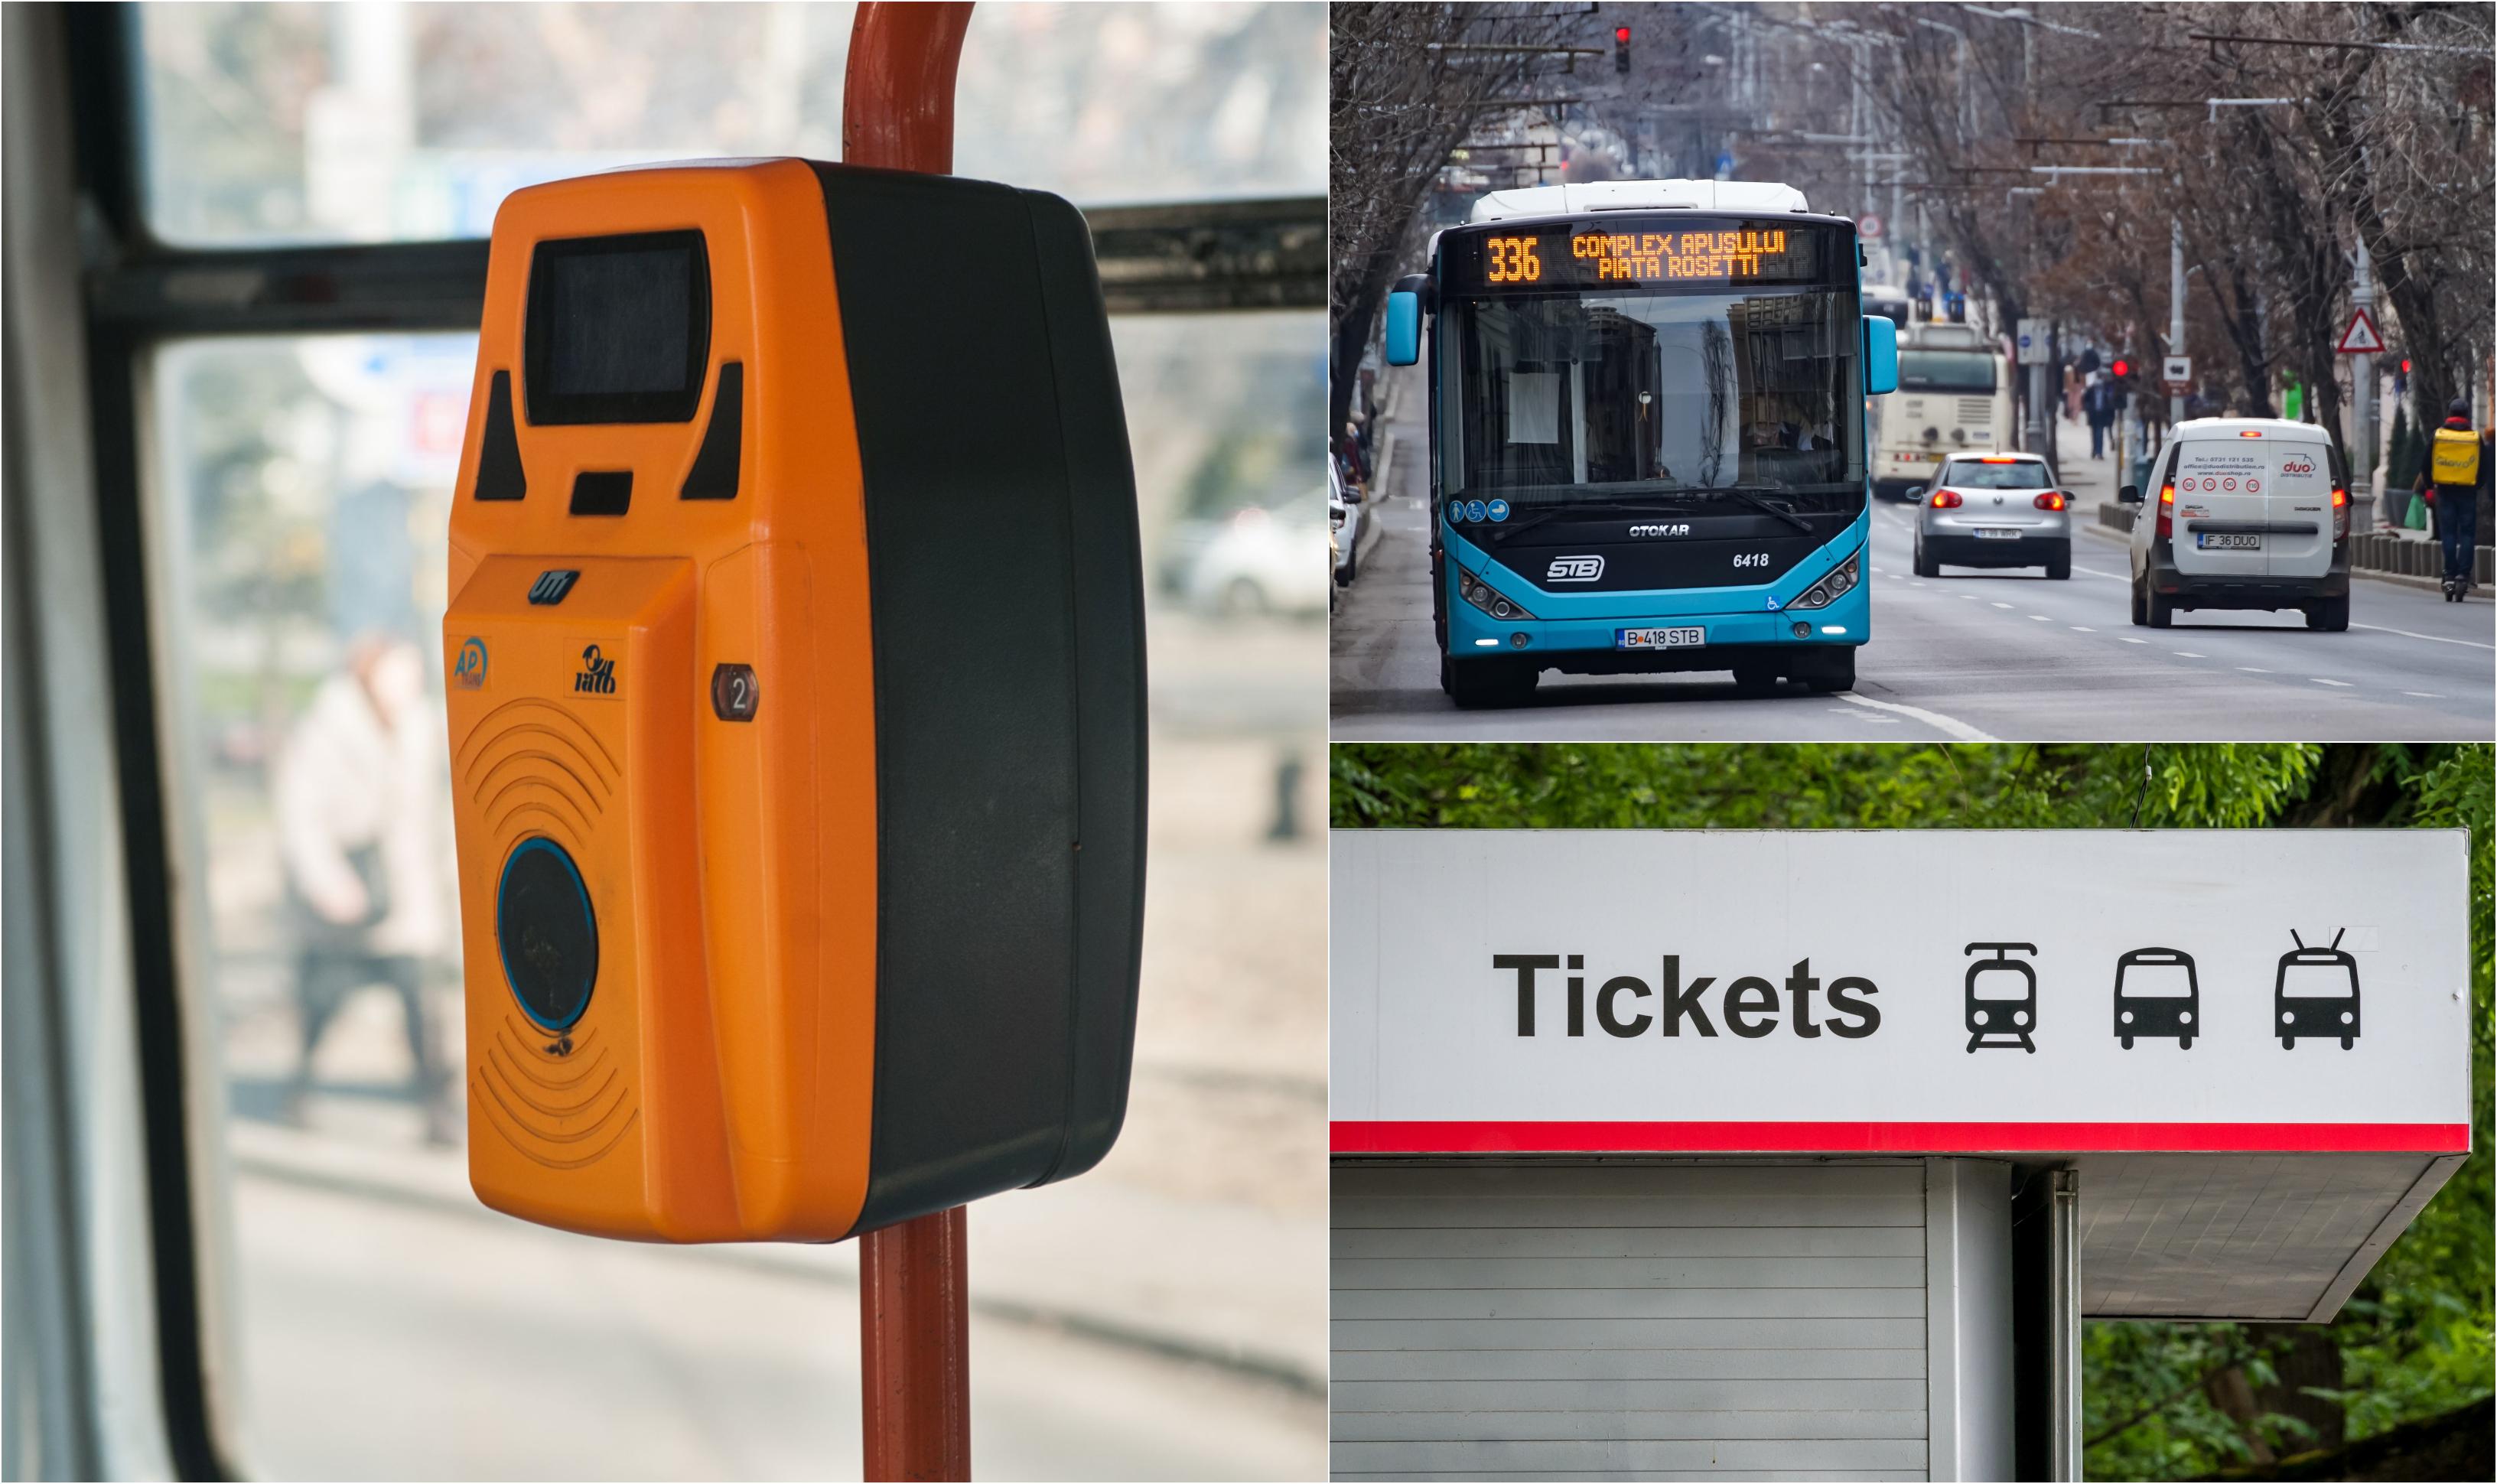 Bilet unic în București pentru autobuz, tramvai și metrou